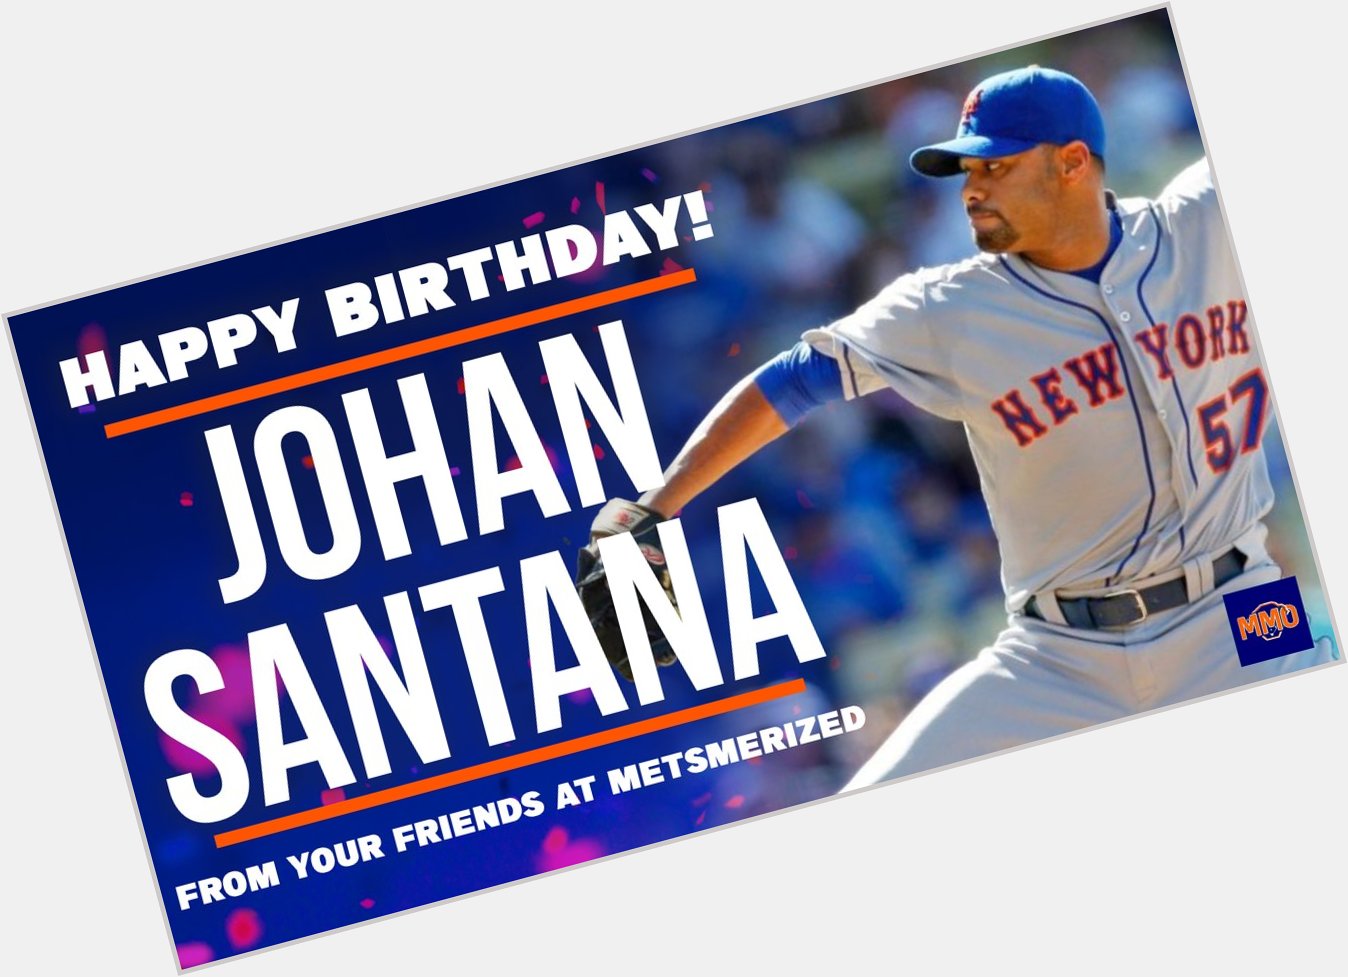 Happy Birthday to Johan Santana! 